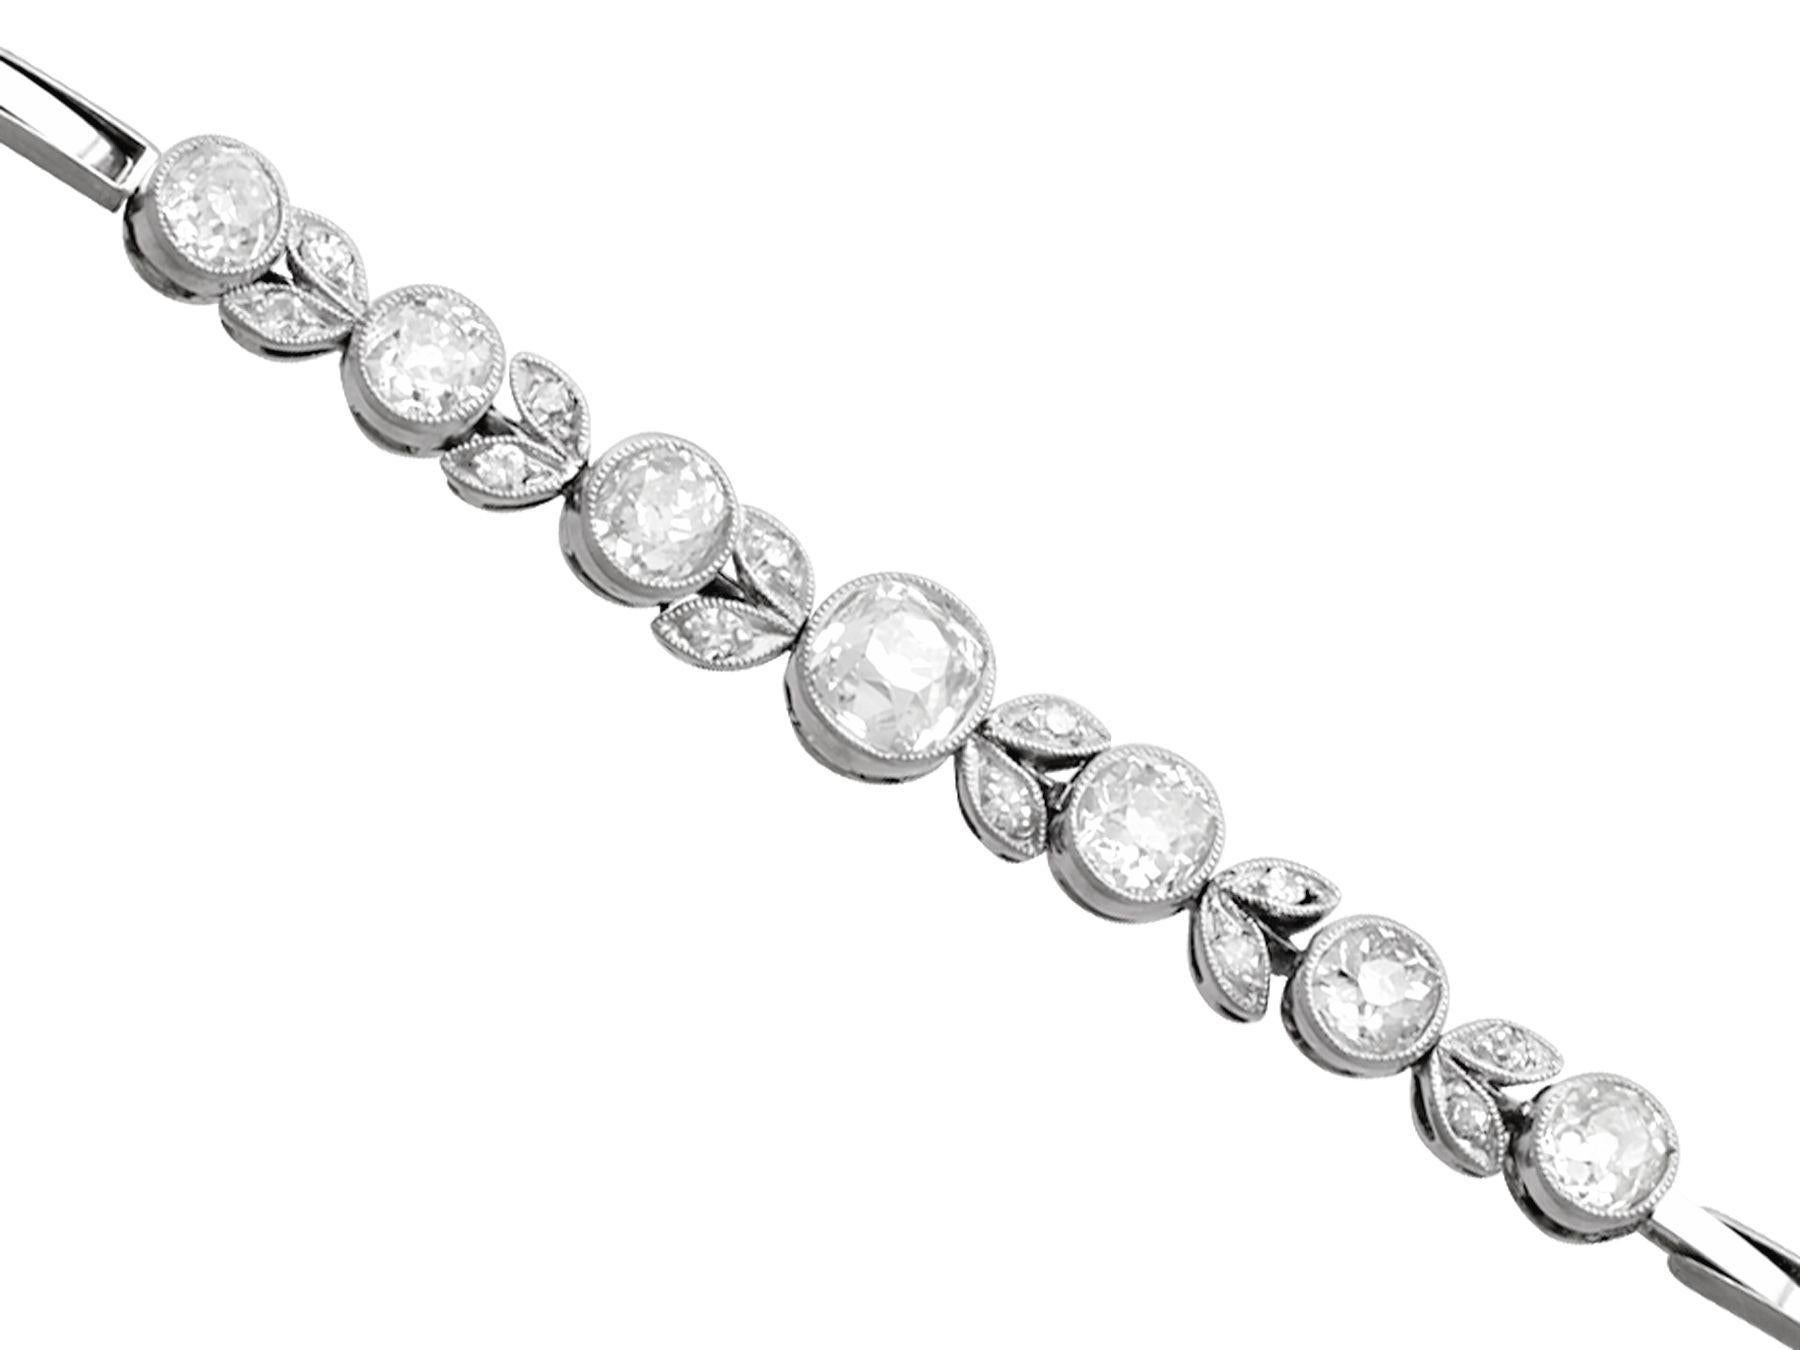 Romantic Antique 3.20 Carat Diamond White Gold Platinum Bracelet, Circa 1930